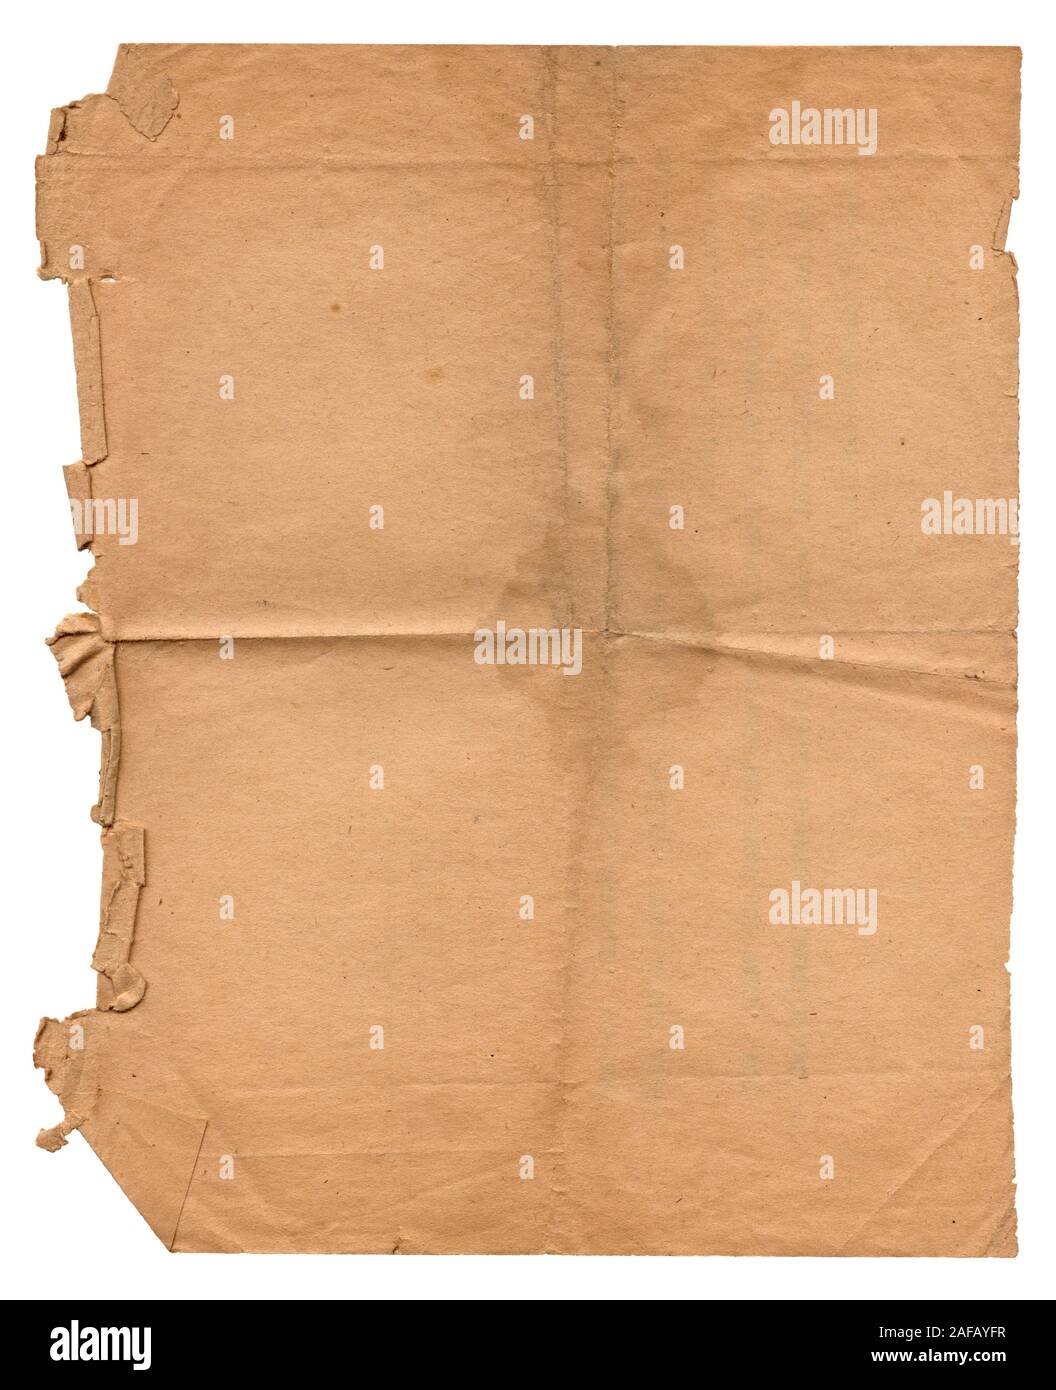 Numérisation haute résolution d'un vieux morceau de papier déchiré et froissé marron à partir des années 1960. L'arrière-plan est blanc isolé. Banque D'Images